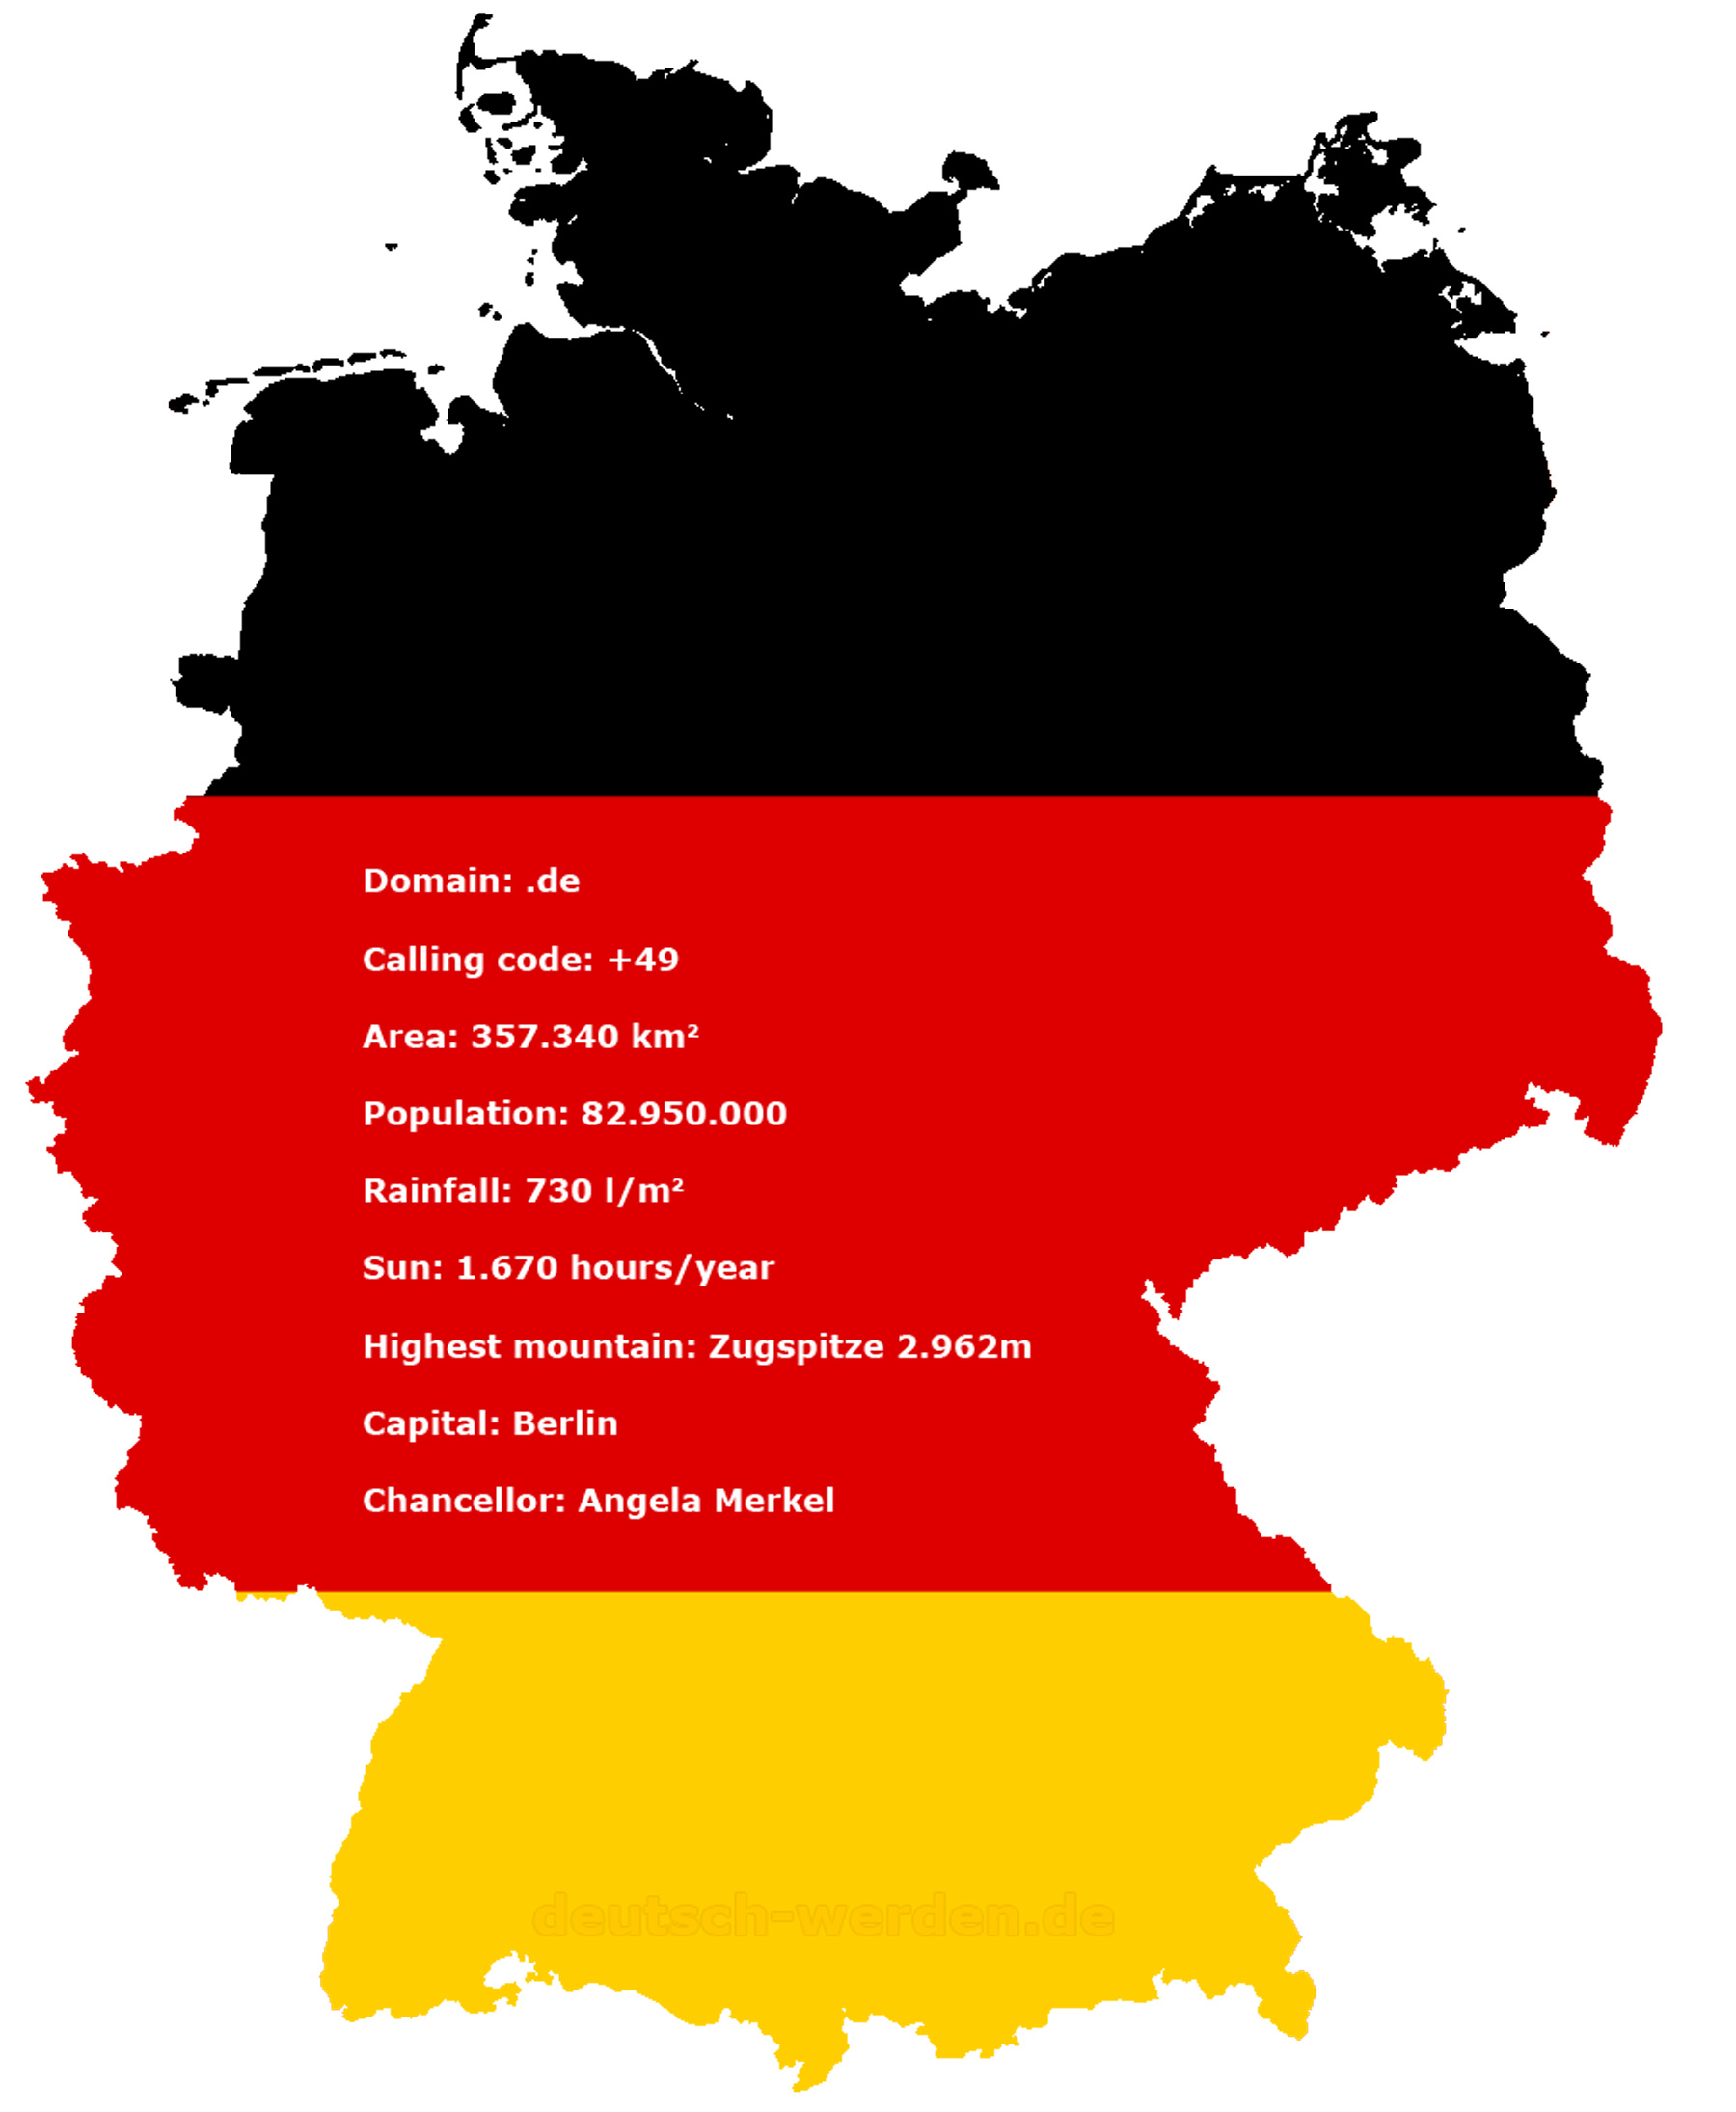 Germany Information Summary